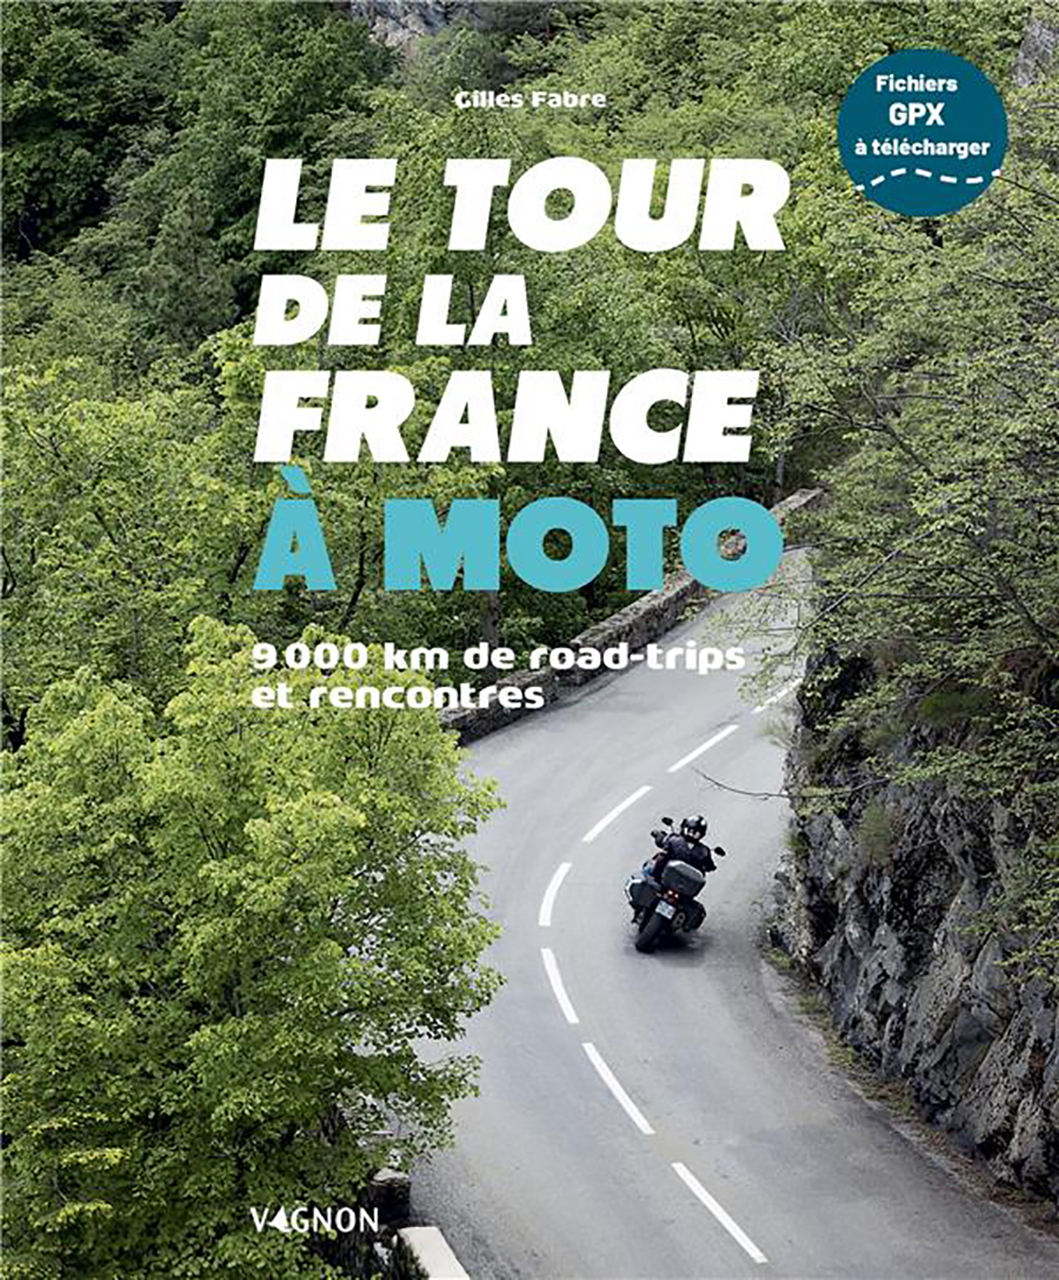 Tour de la france a moto - 9000 km de road tr